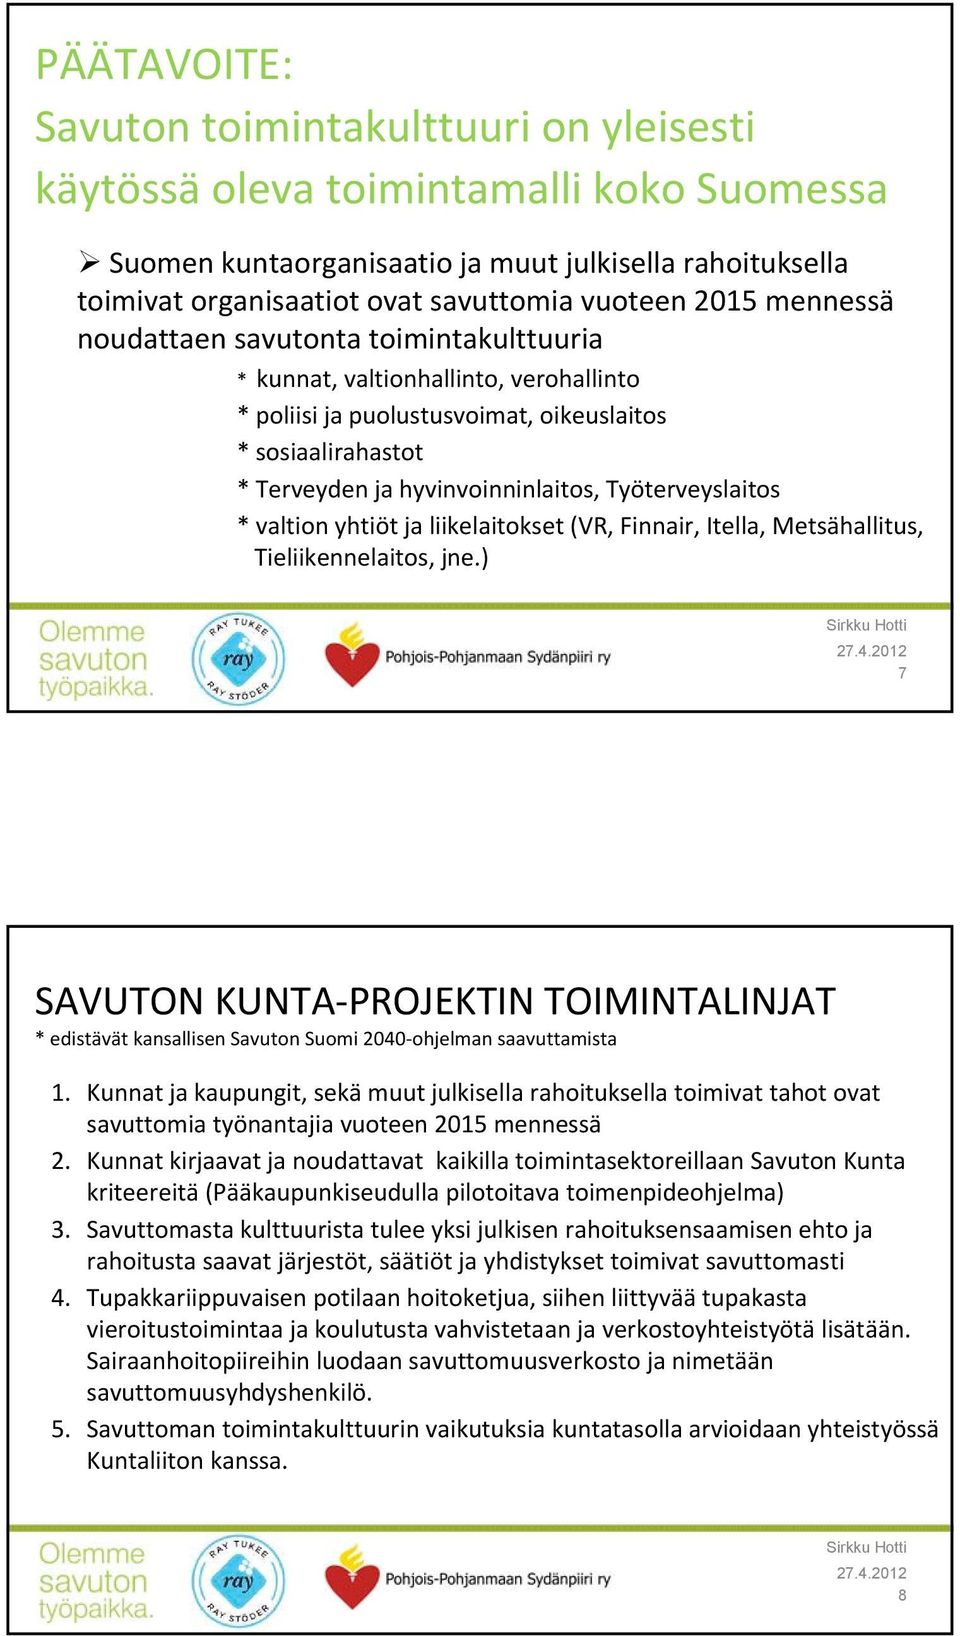 Työterveyslaitos * valtion yhtiöt ja liikelaitokset (VR, Finnair, Itella, Metsähallitus, Tieliikennelaitos, jne.